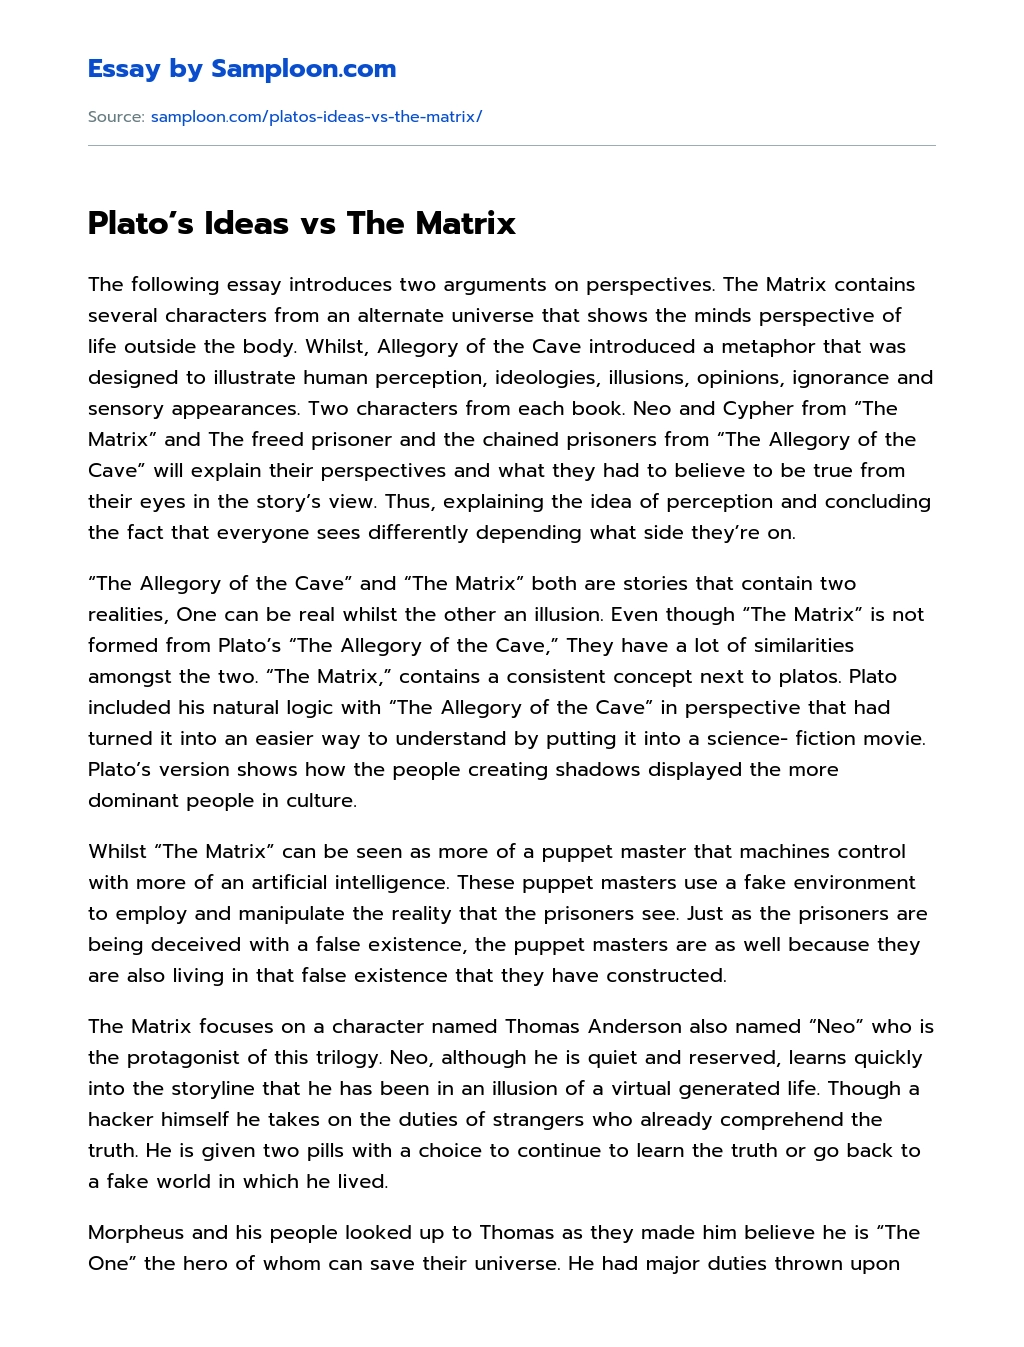 Plato’s Ideas vs The Matrix essay